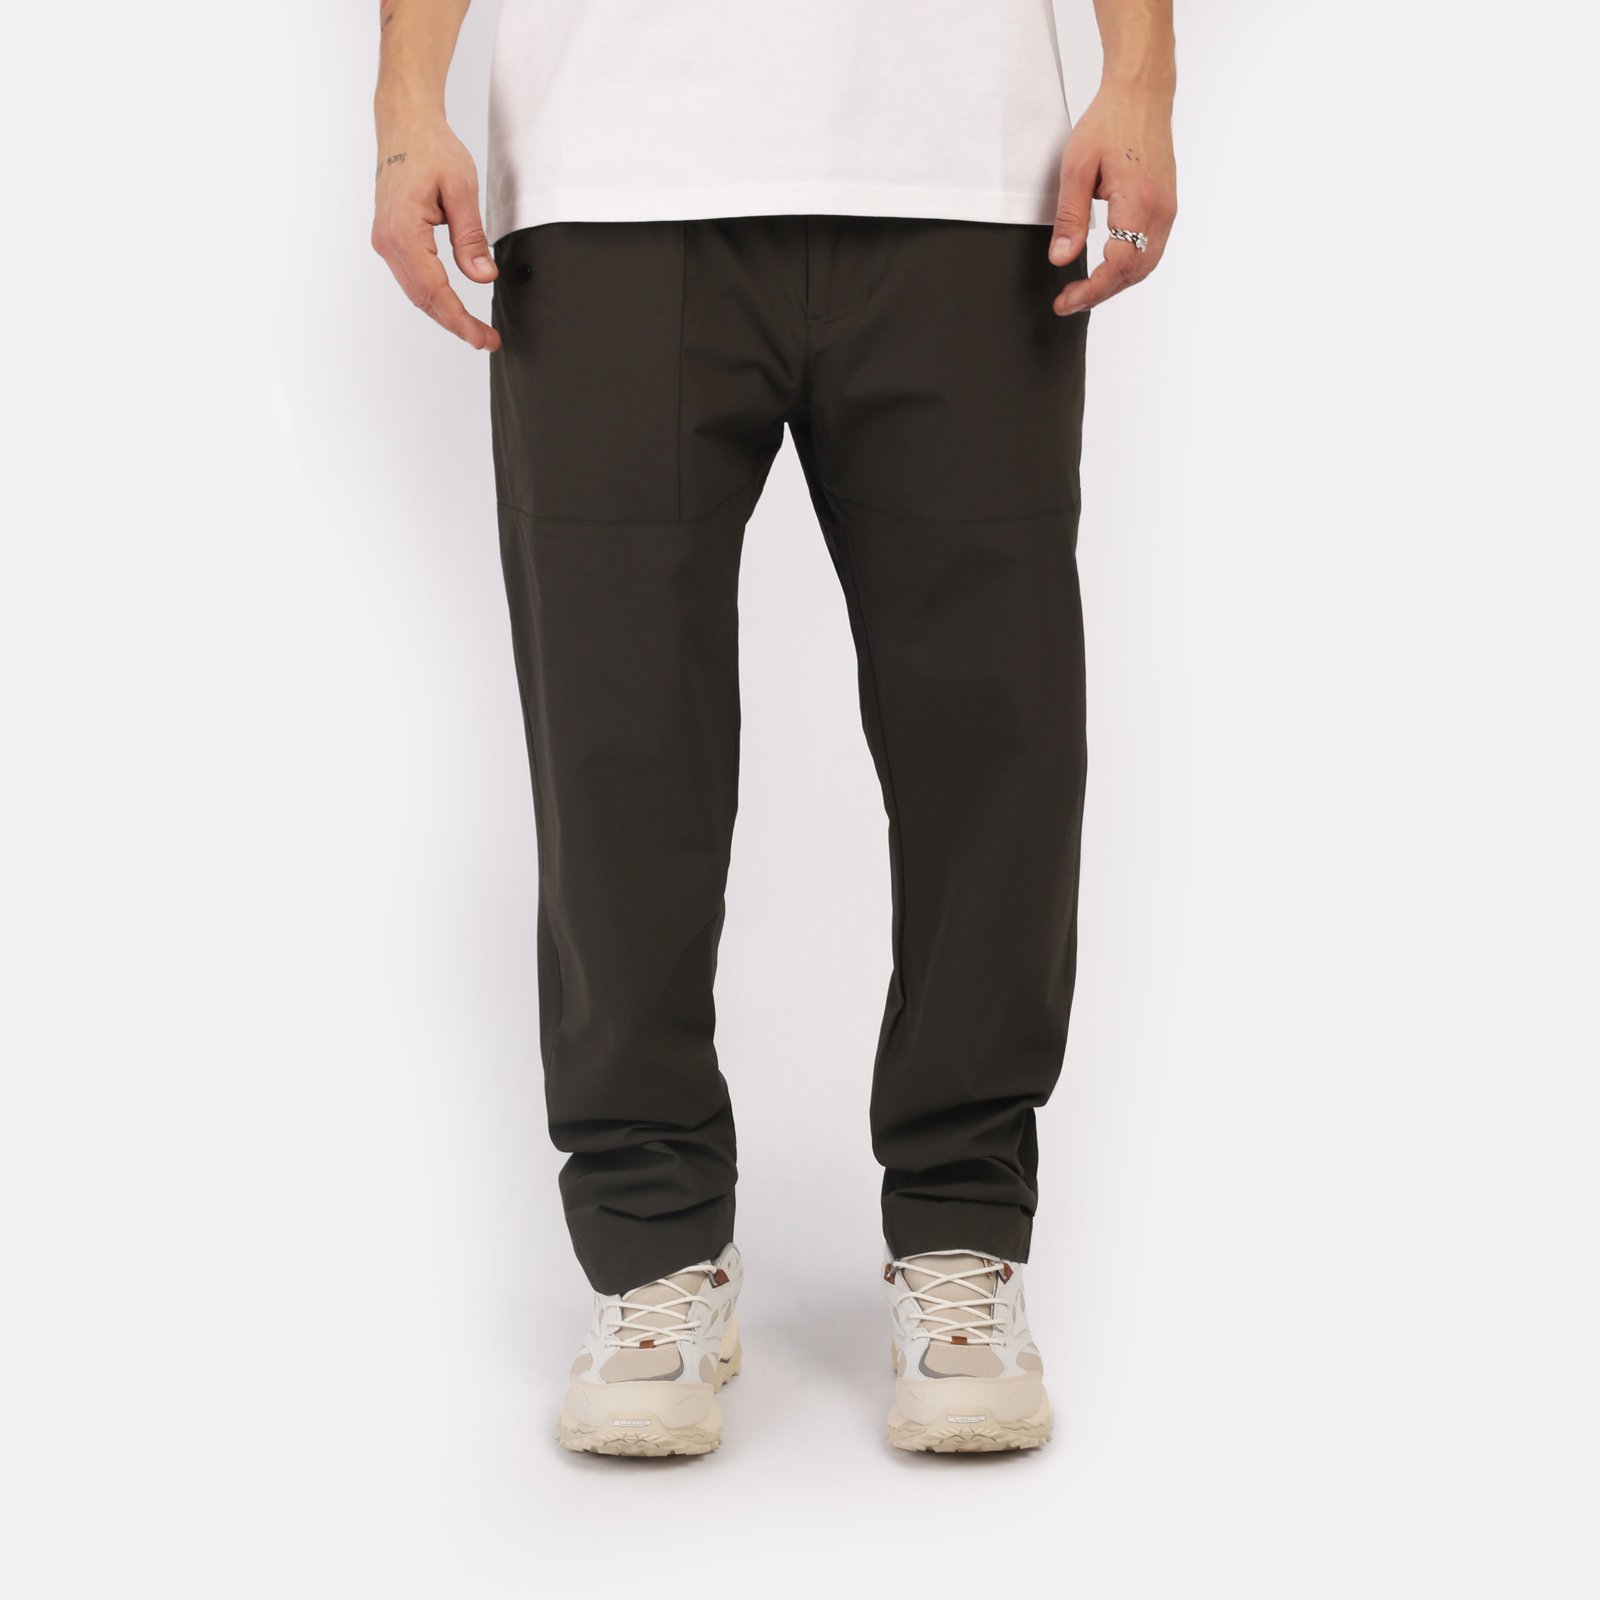 мужские брюки KRAKATAU Rm180-5  (Rm180-5-тем-зел)  - цена, описание, фото 1